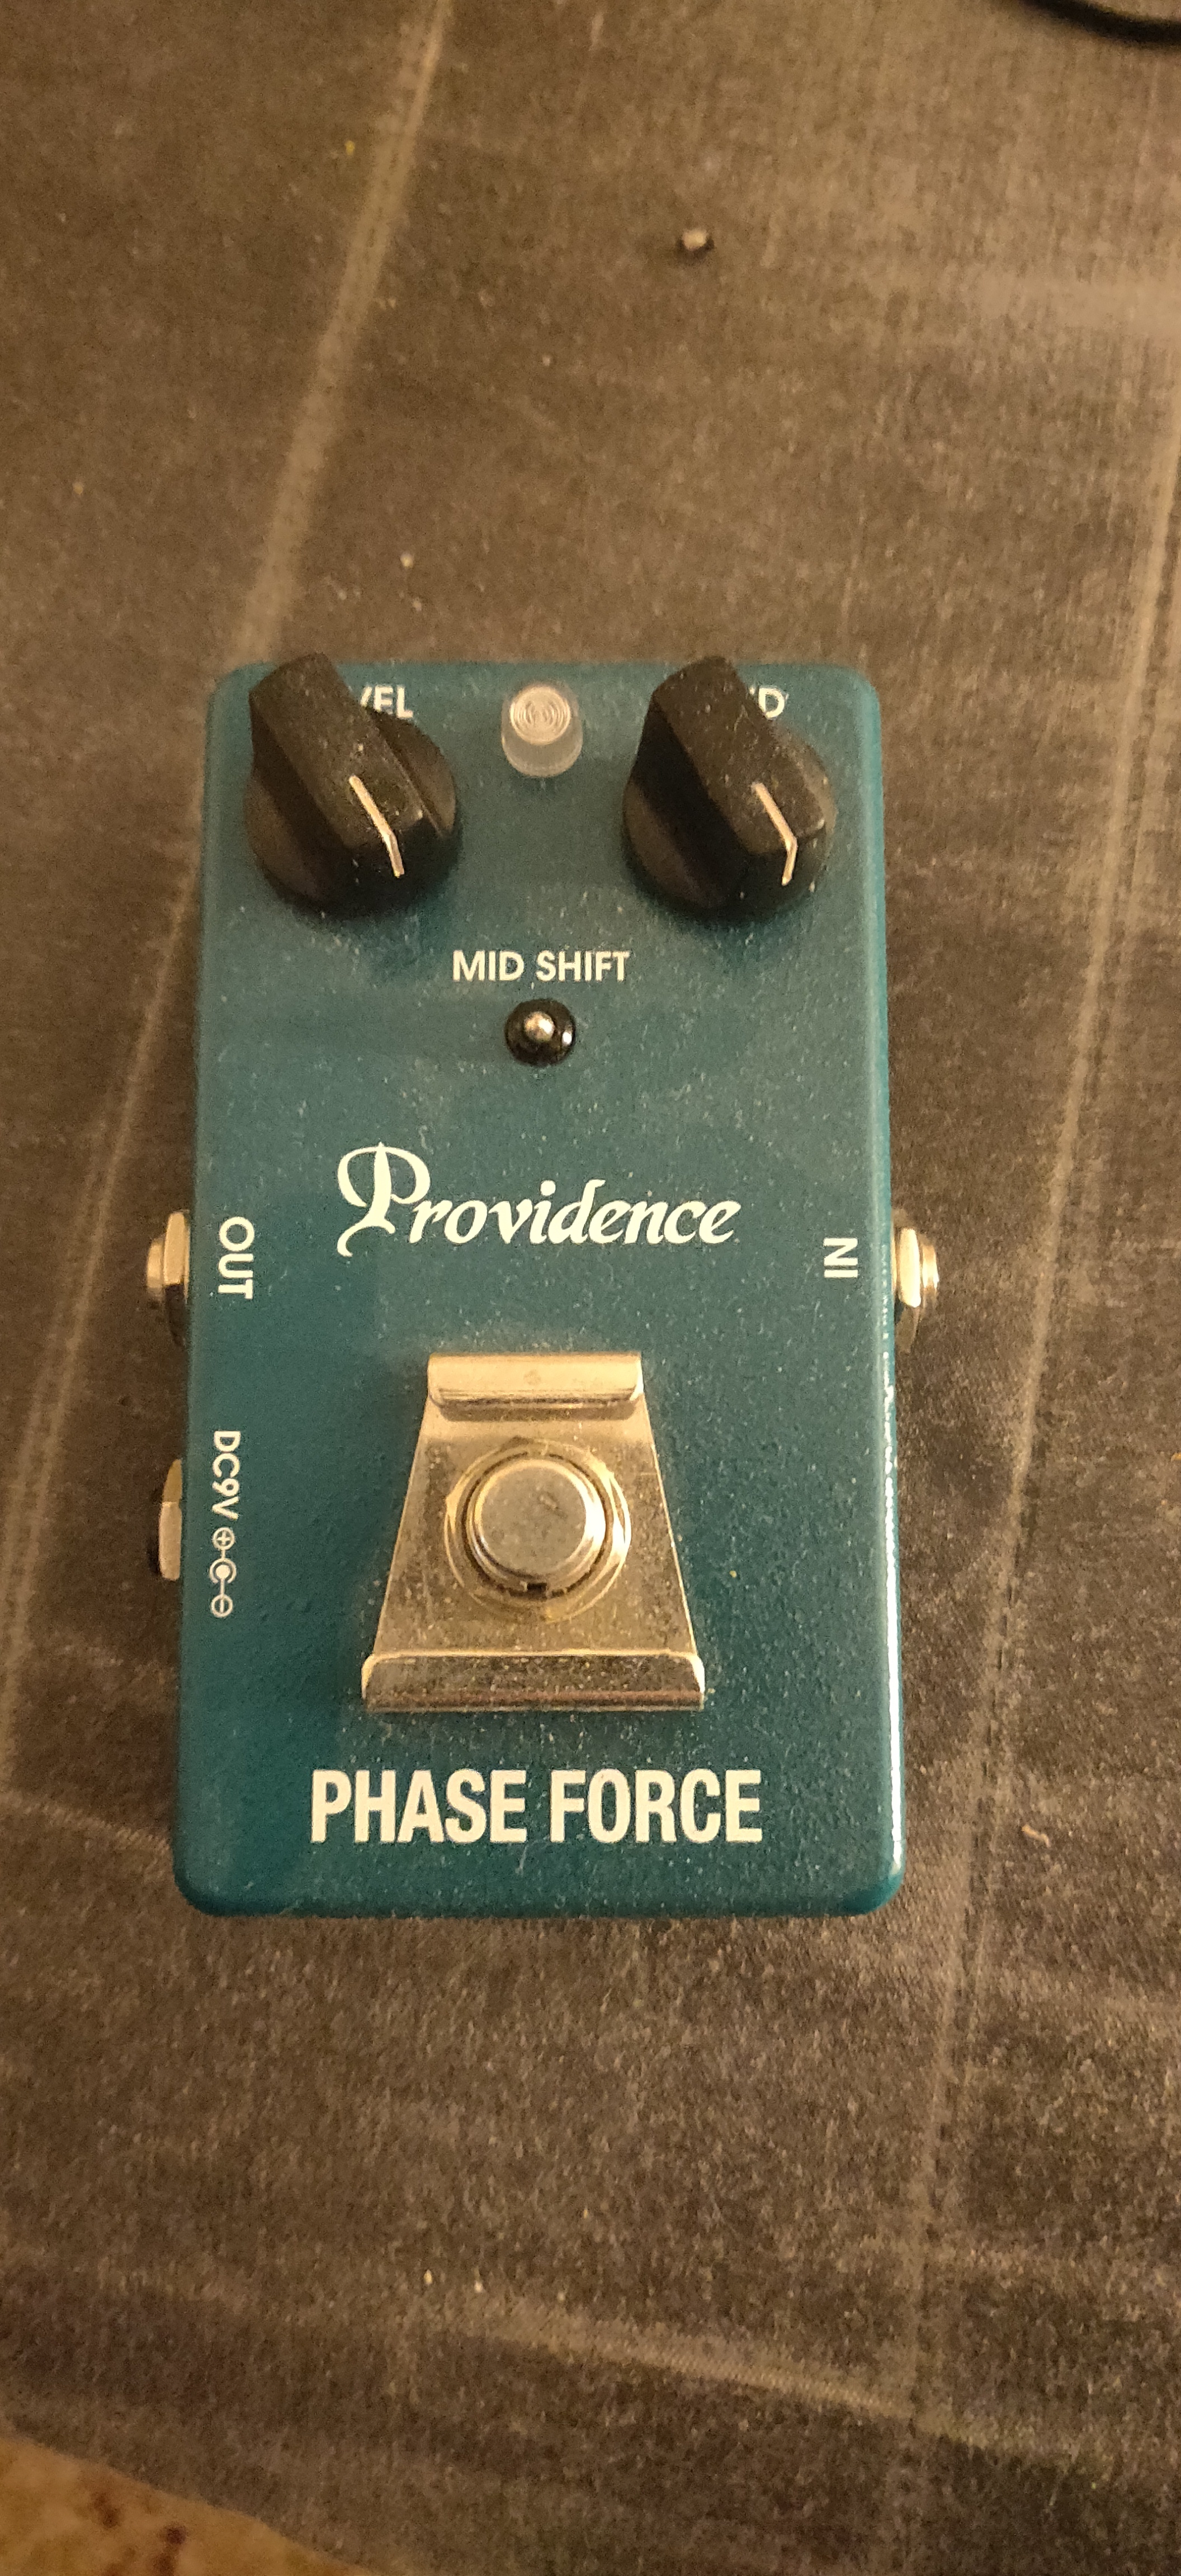 Phase Force PHF-1 - Providence Phase Force PHF-1 - Audiofanzine